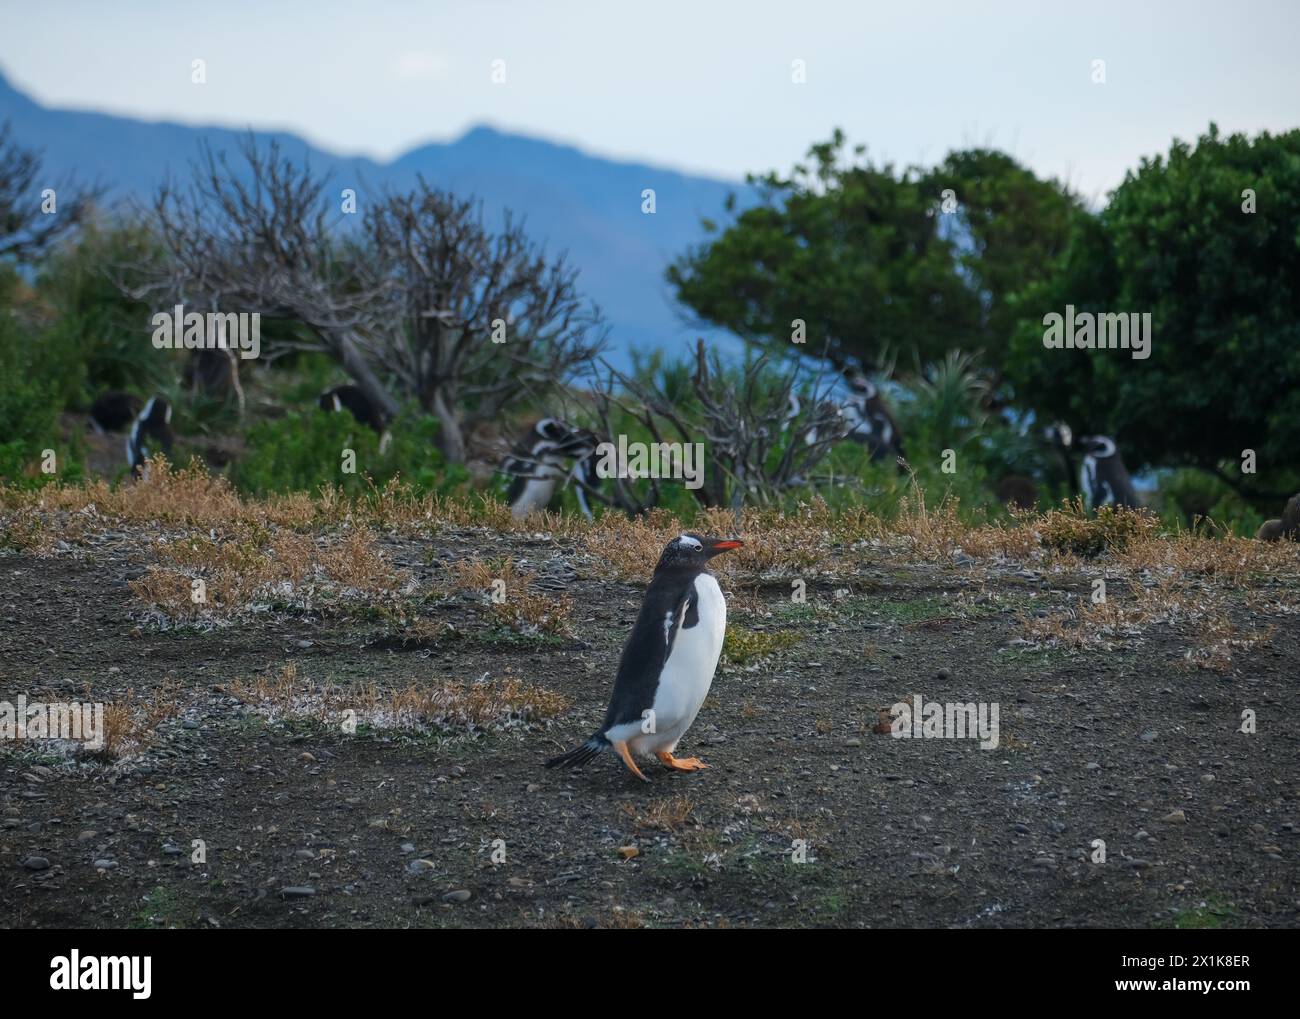 Ushuaia, Tierra del Fuego, Argentinien - Gentoo-Pinguine und Hinterpinguine auf der Isla Martillo im Beagle-Kanal ist der Beagle-Kanal ein na Stockfoto